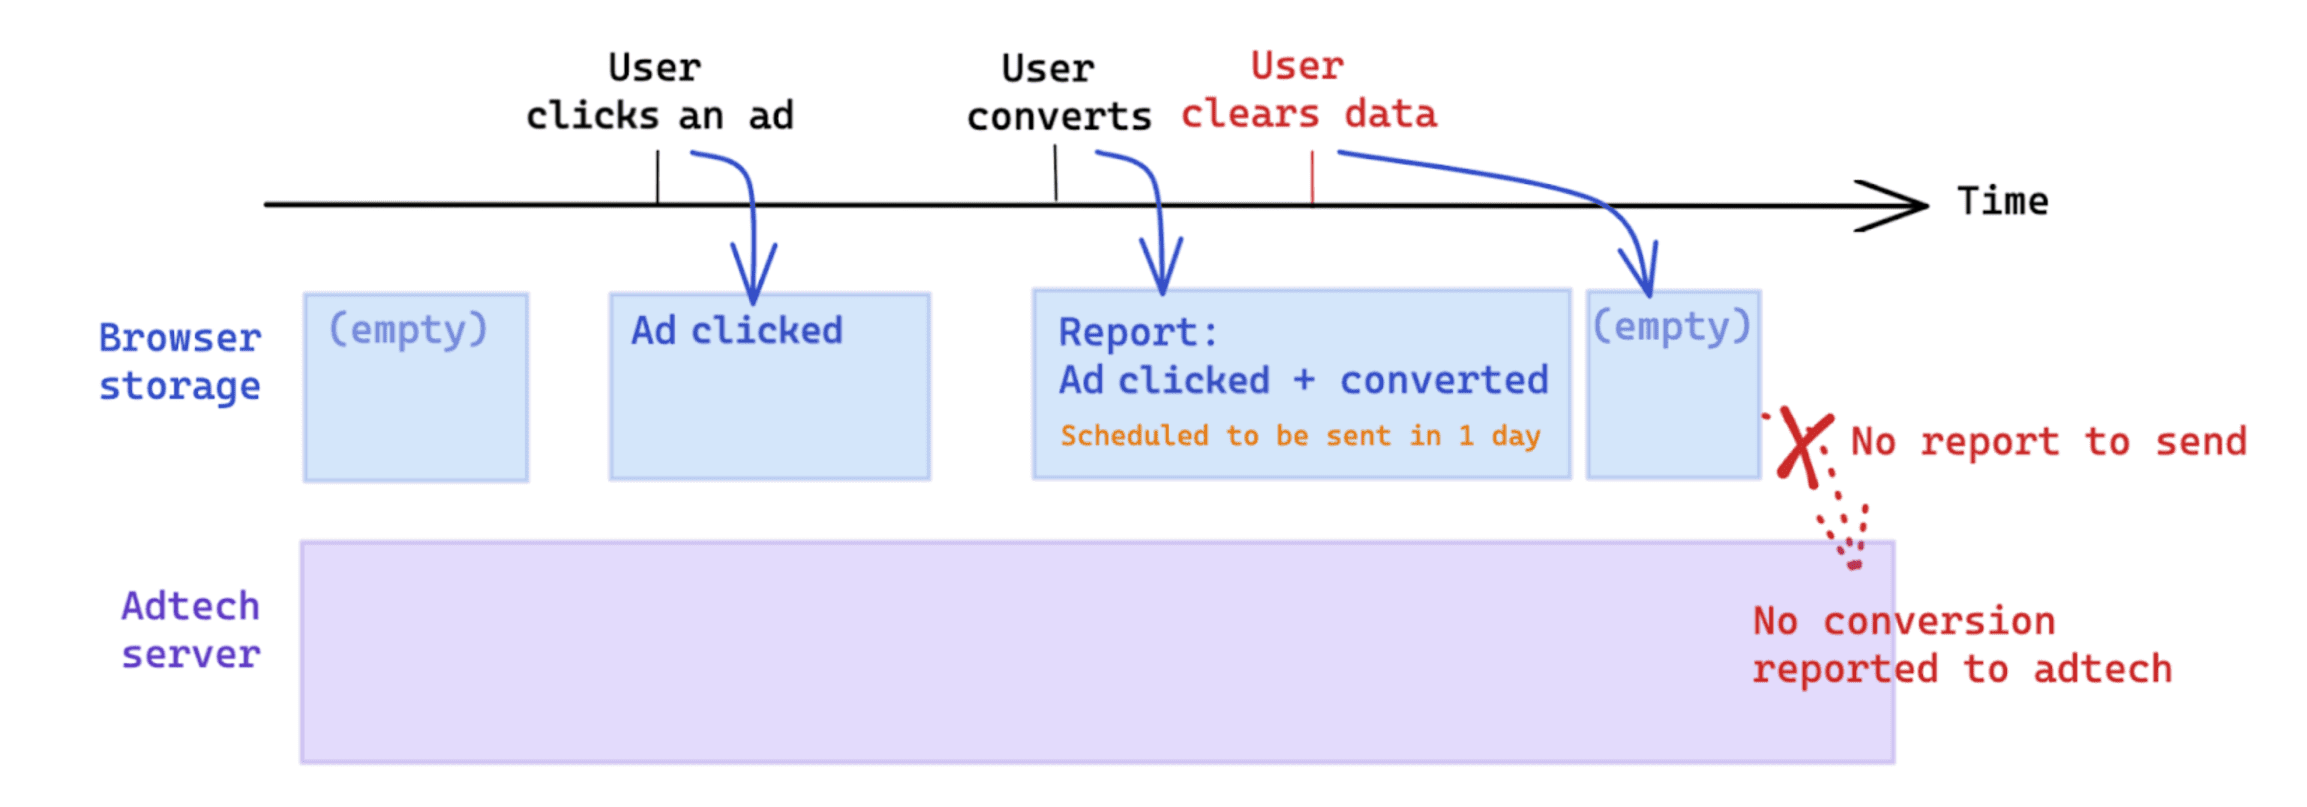 在转化发生后，用户发起的数据清除操作会影响衡量（基于 Attribution Reporting API）。